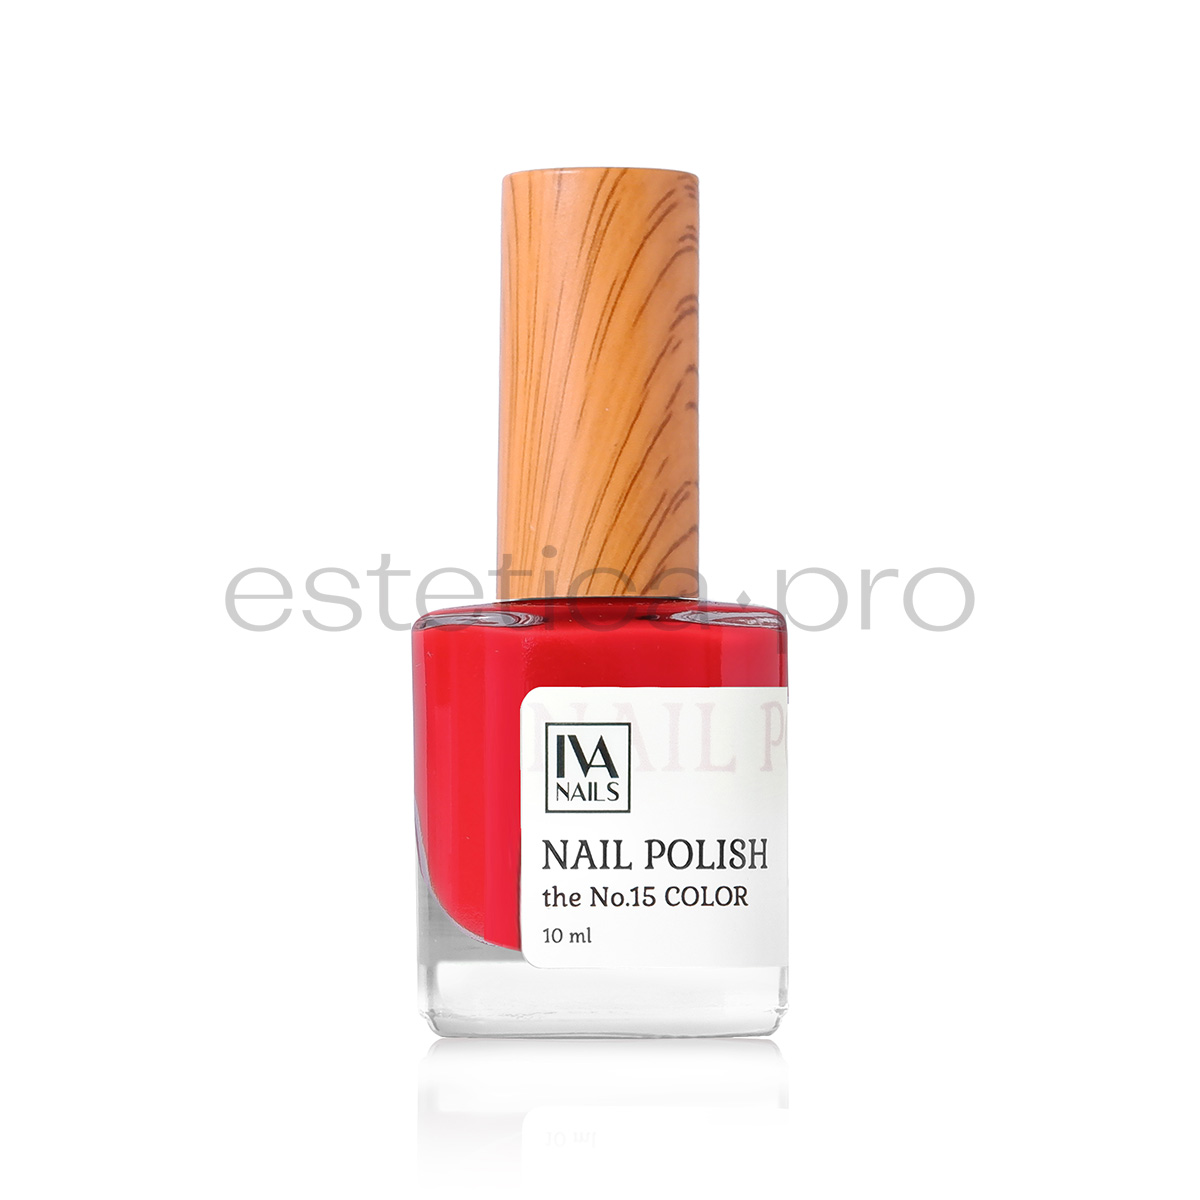 Лак для ногтей Iva Nails 15, 10мл.